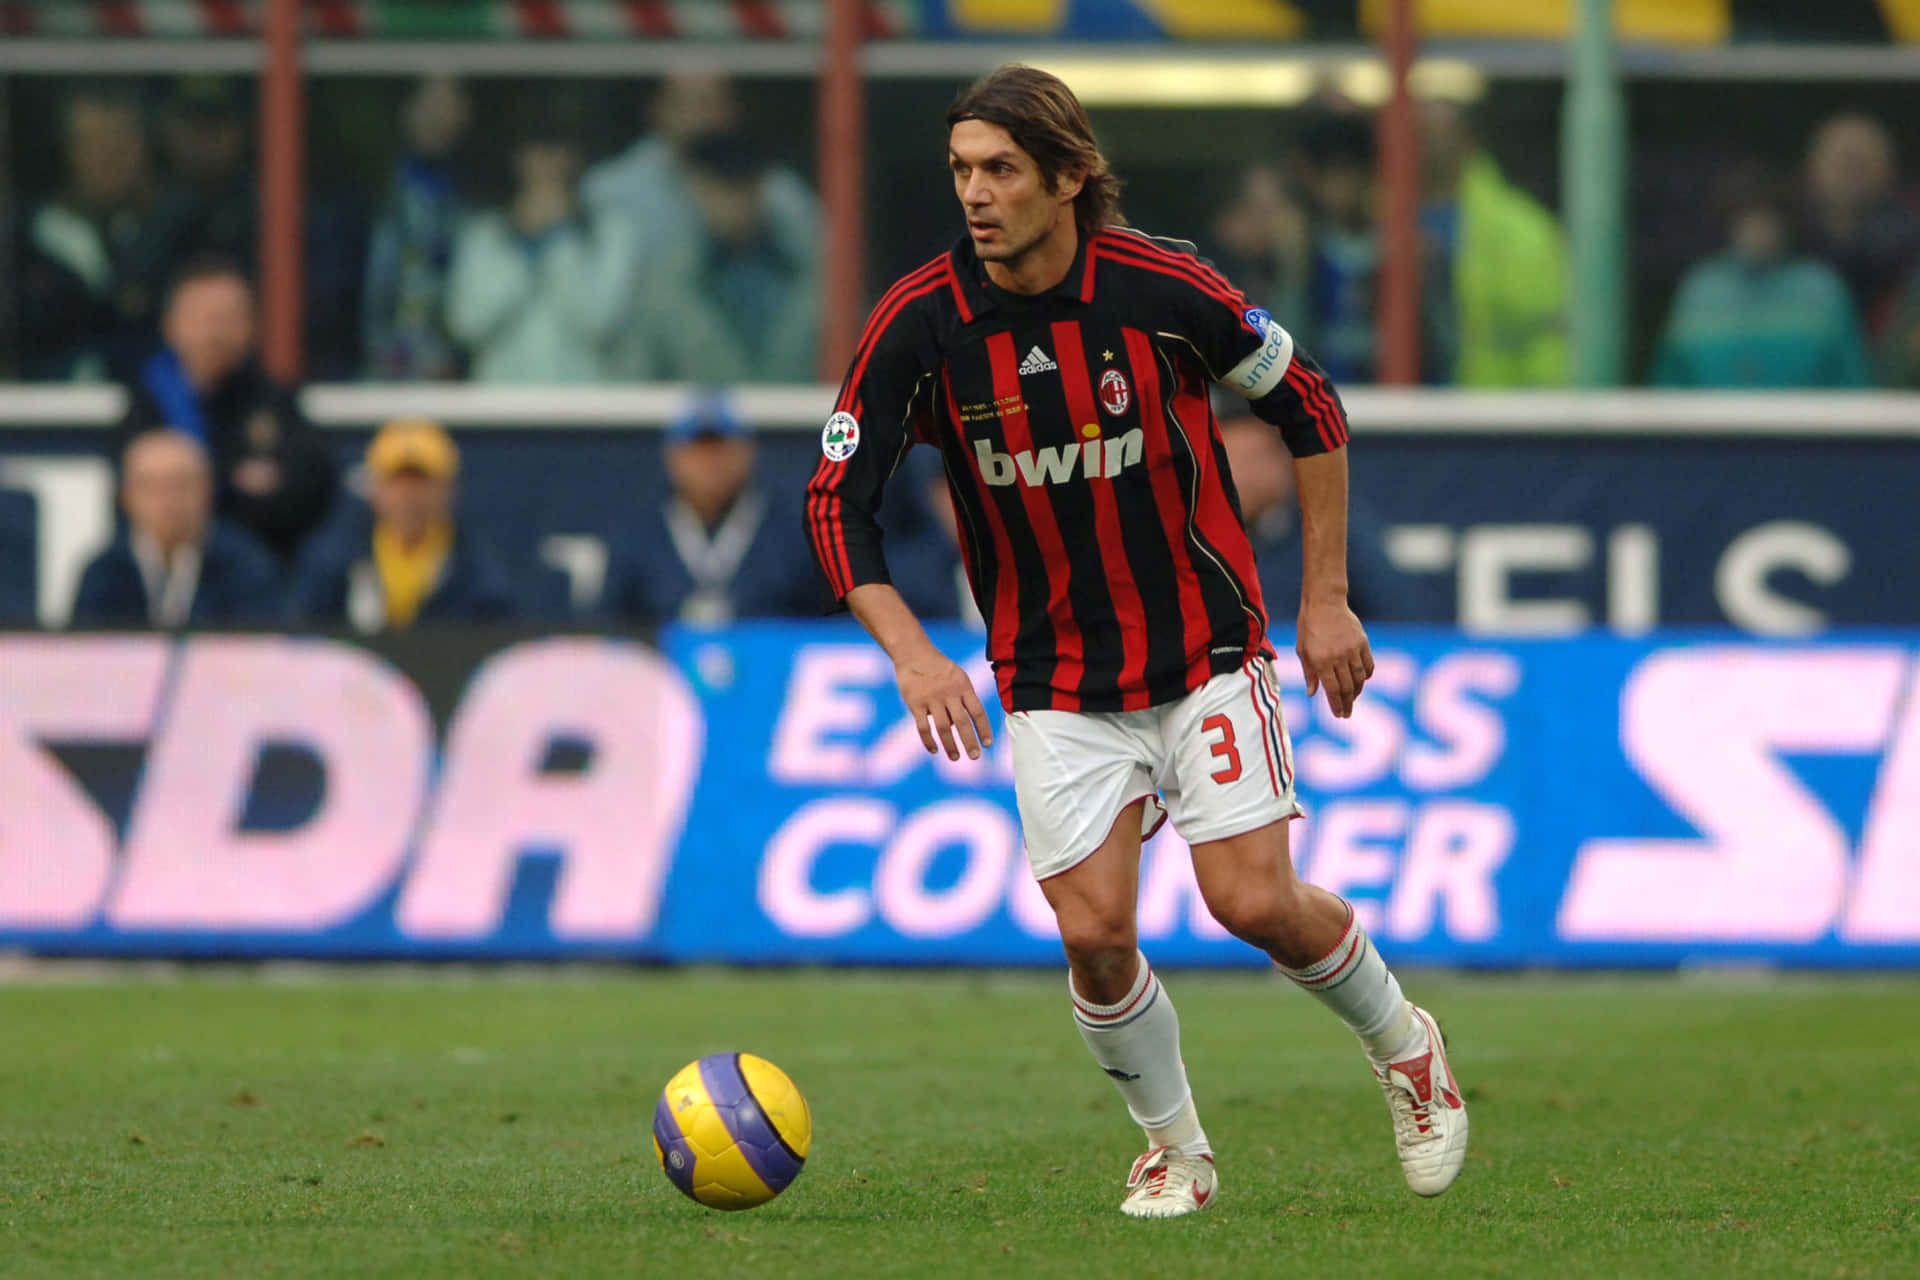 Paolo Maldini Kicking The Ball Picture